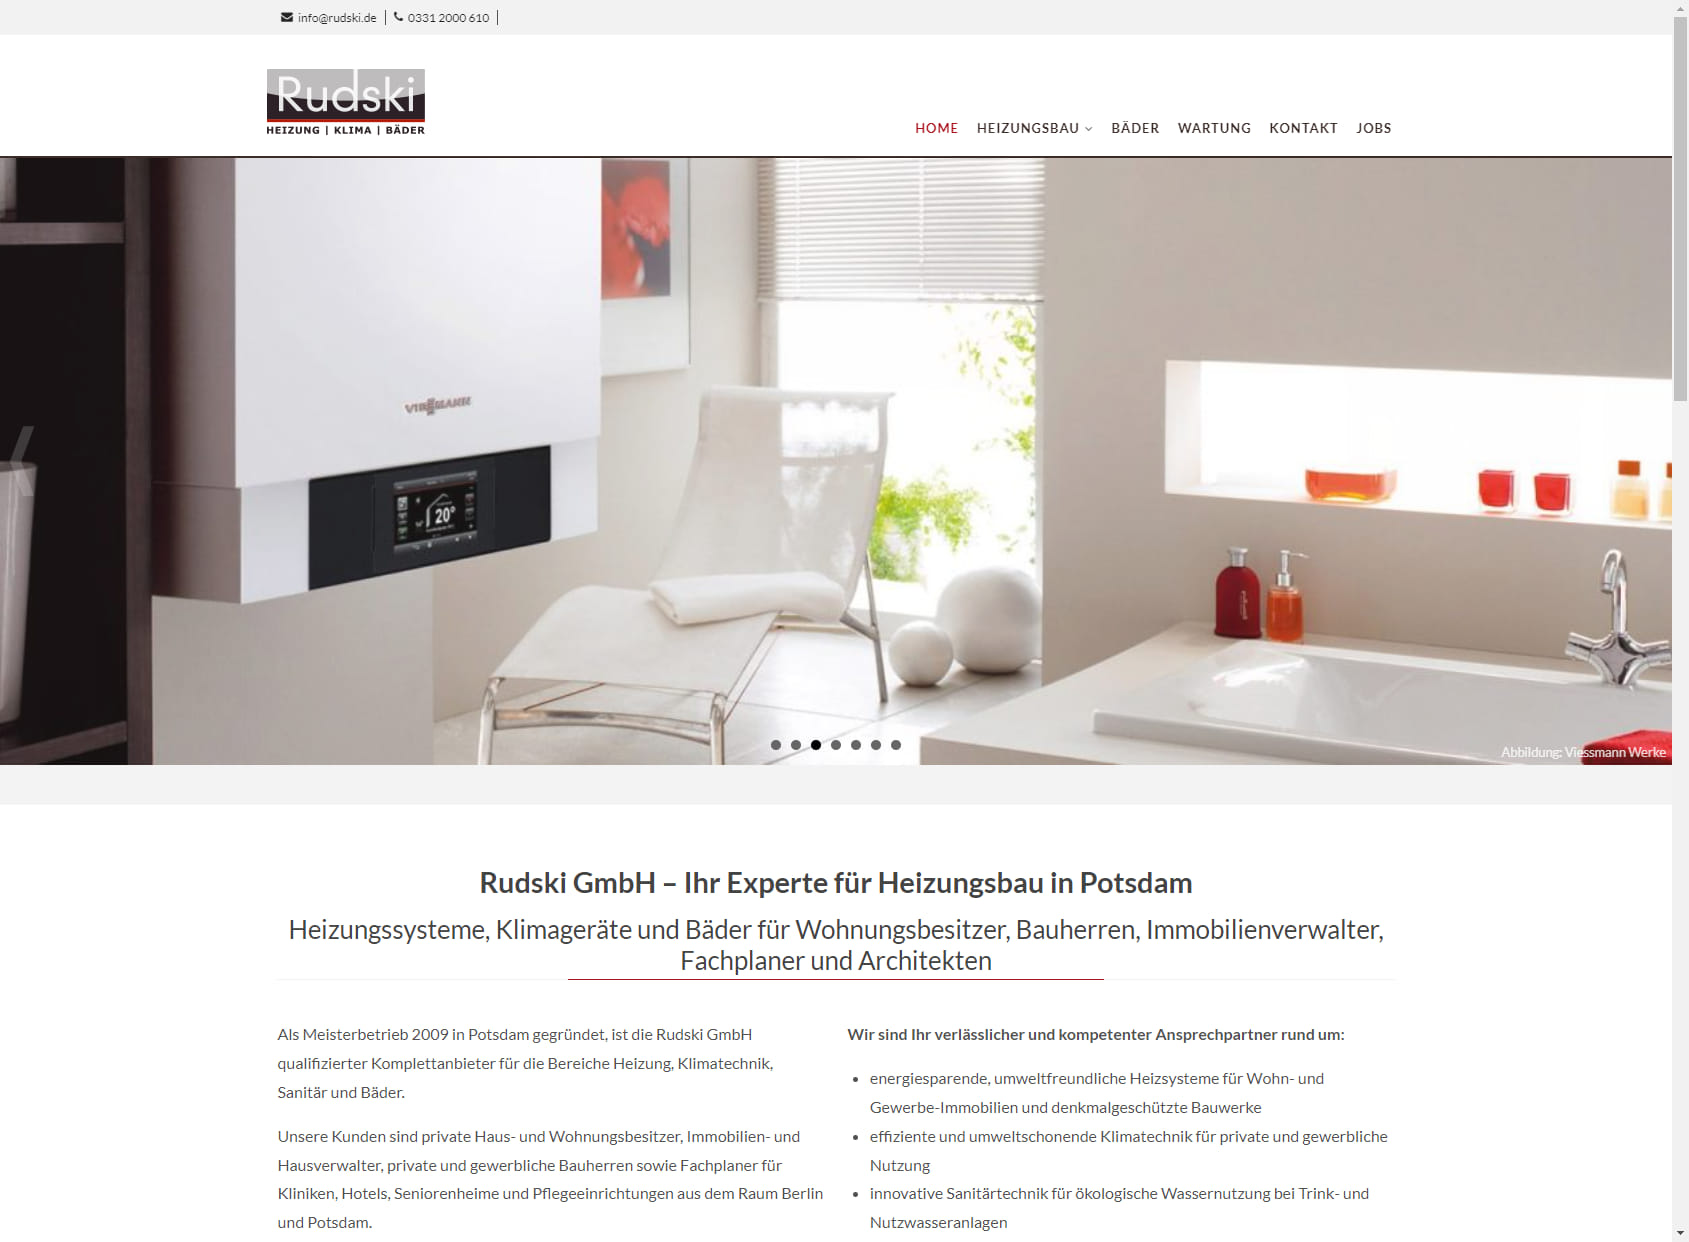 Rudski GmbH Bäder & Heizungen